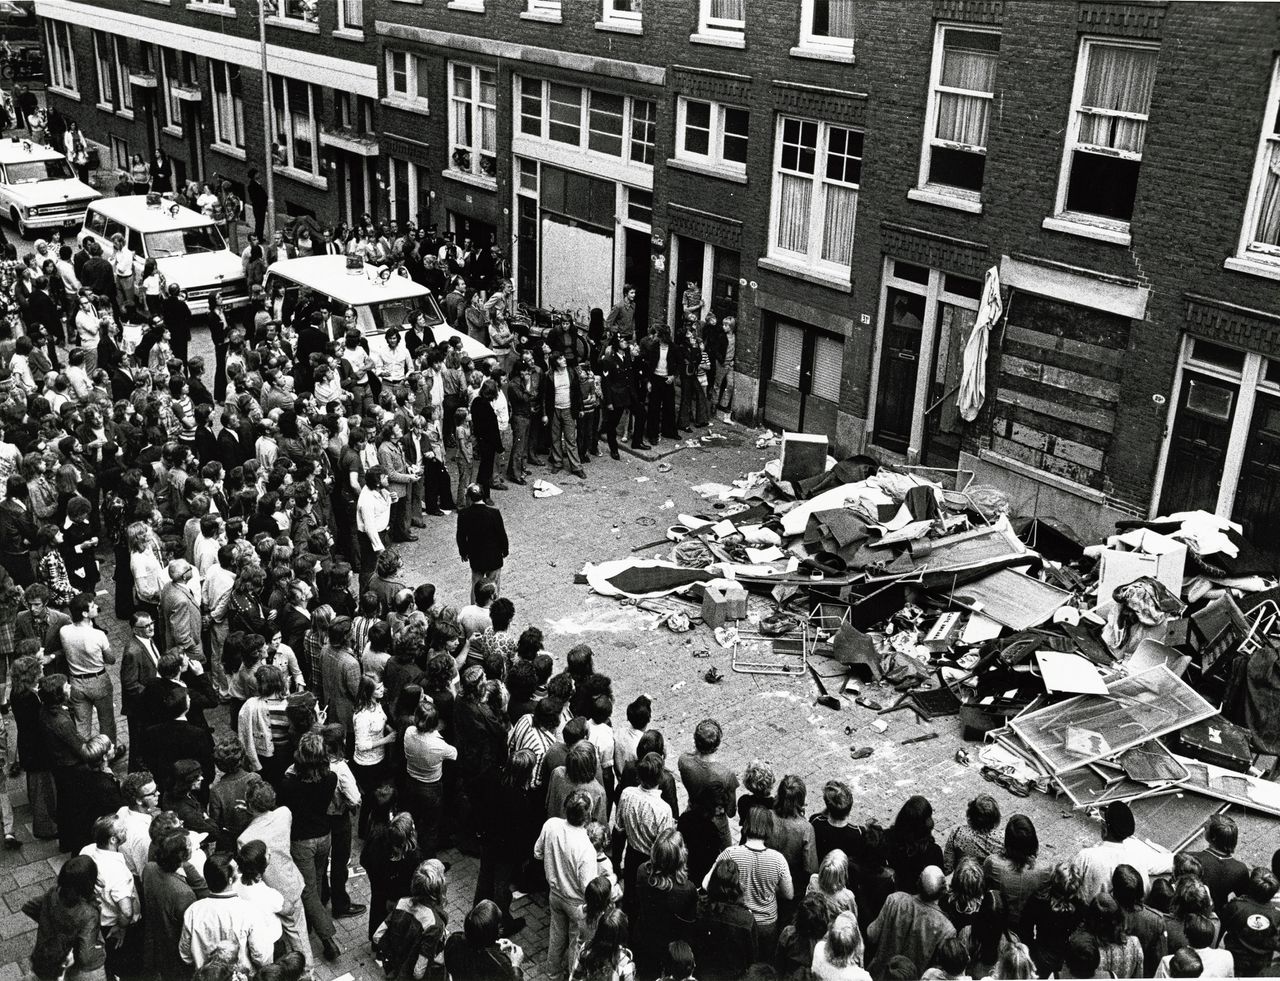 Meubilair op straat gegooid tijdens de rellen in de Afrikaanderwijk in 1972.